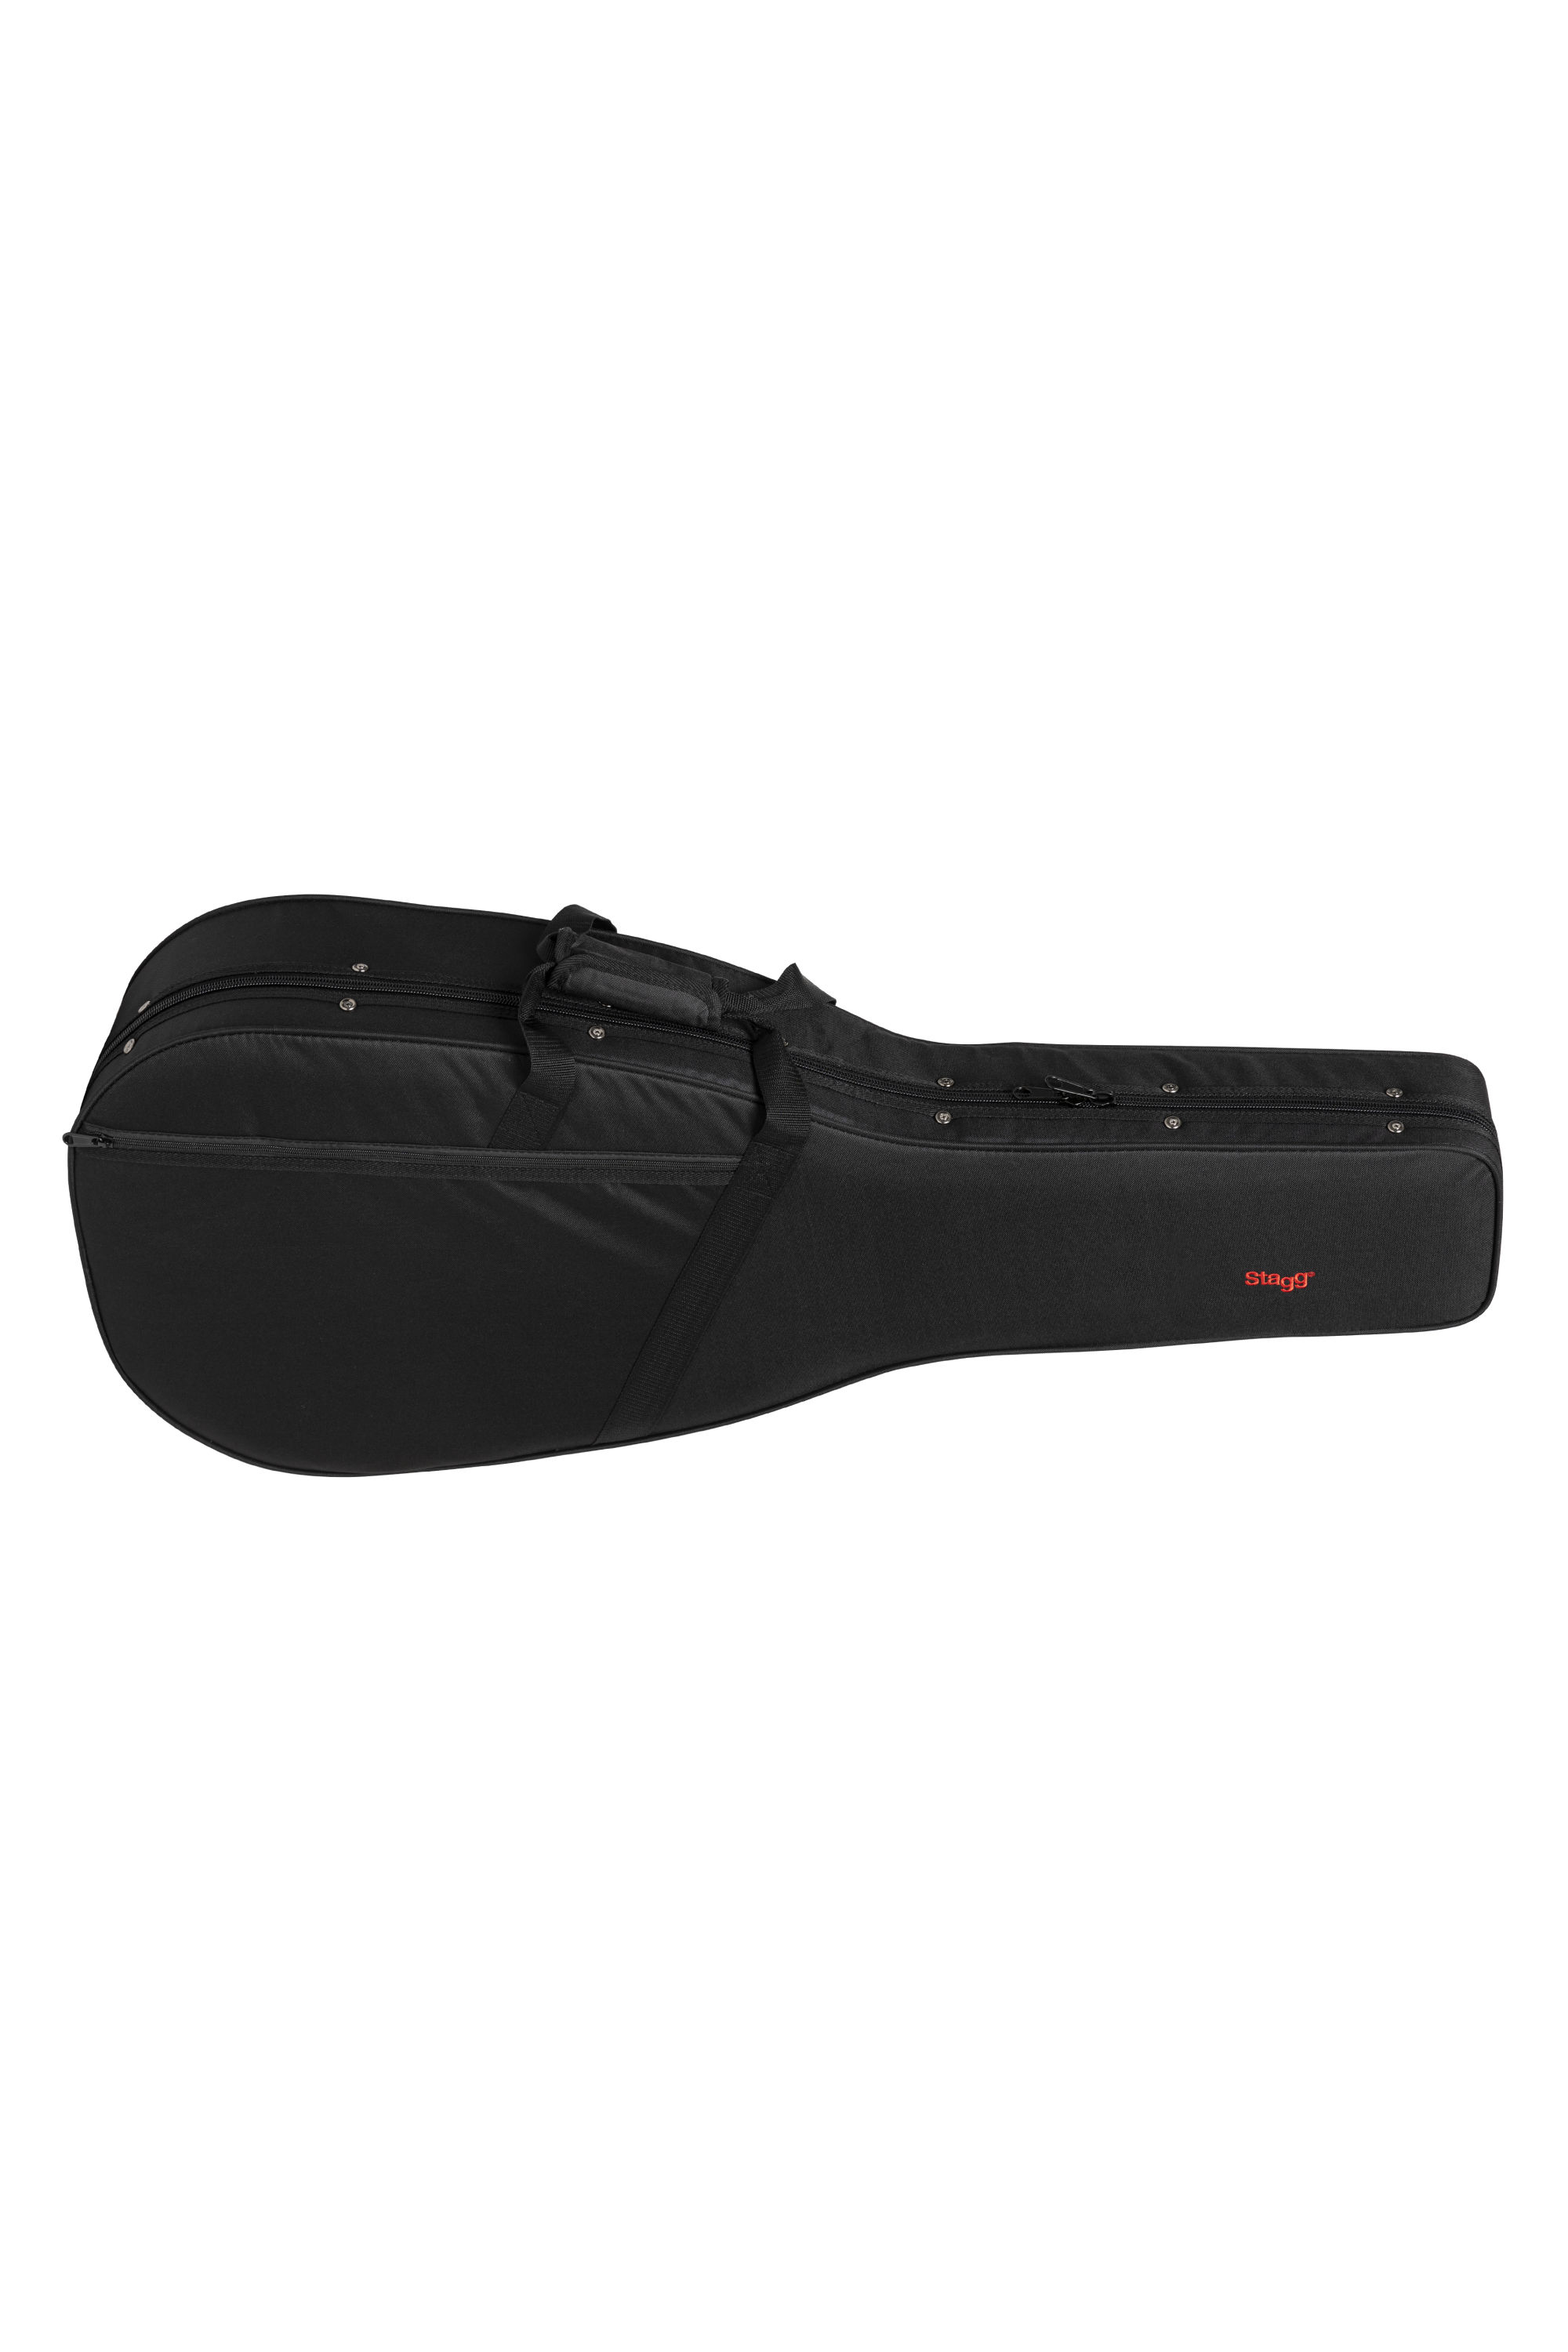 Stagg HGB2-W, lehký kufr pro akustickou kytaru